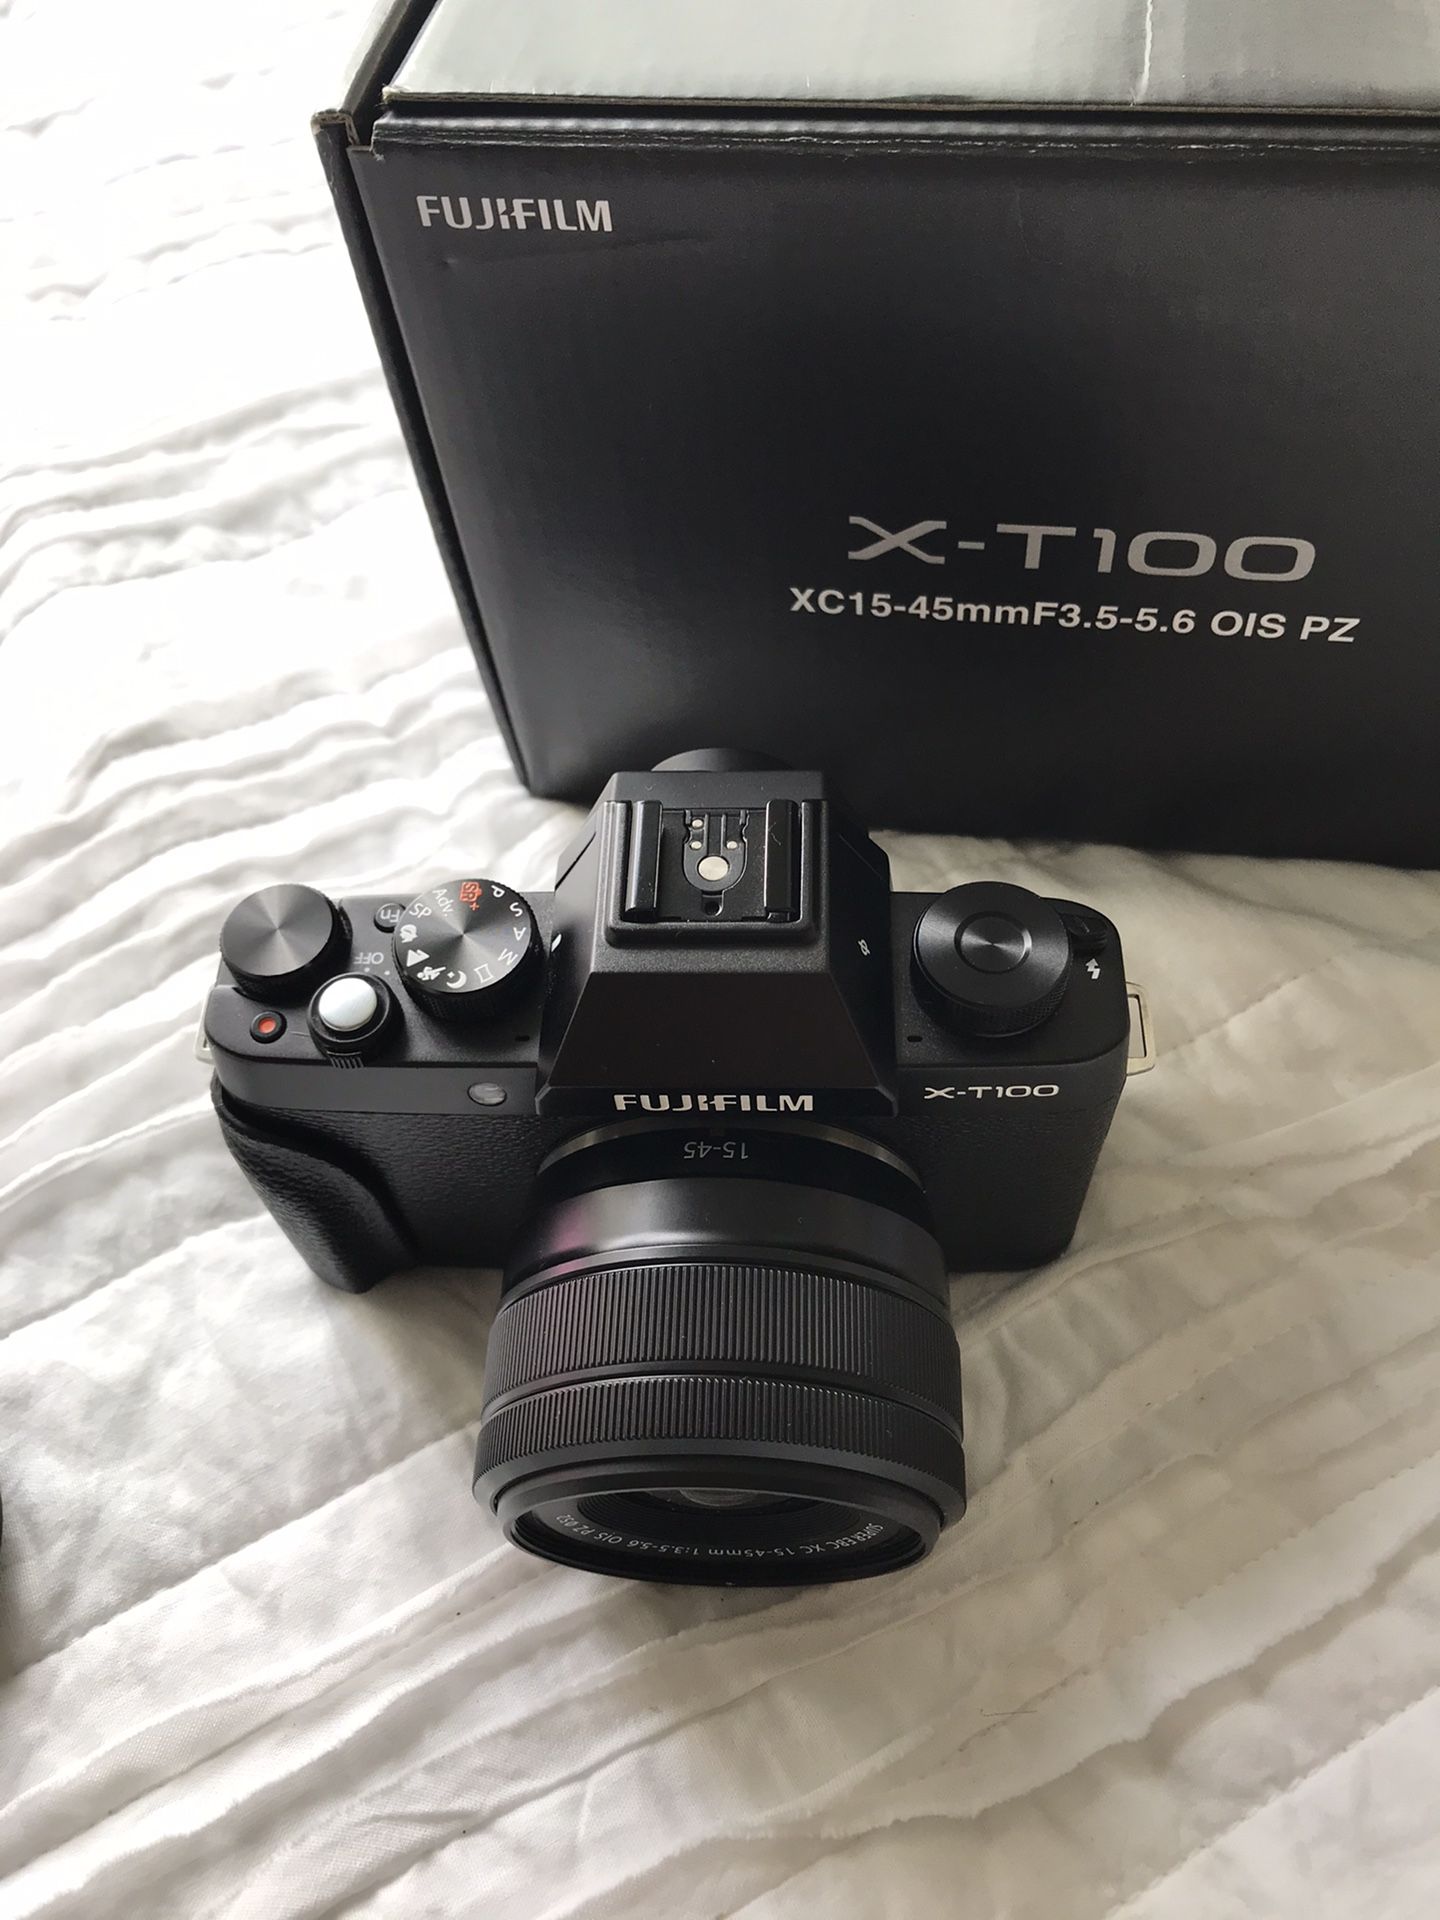 Fujifilm X-T100 Mirrorless Digital Camera w/XC15-45mmF3.5-5.6 OIS PZ Lens - Black